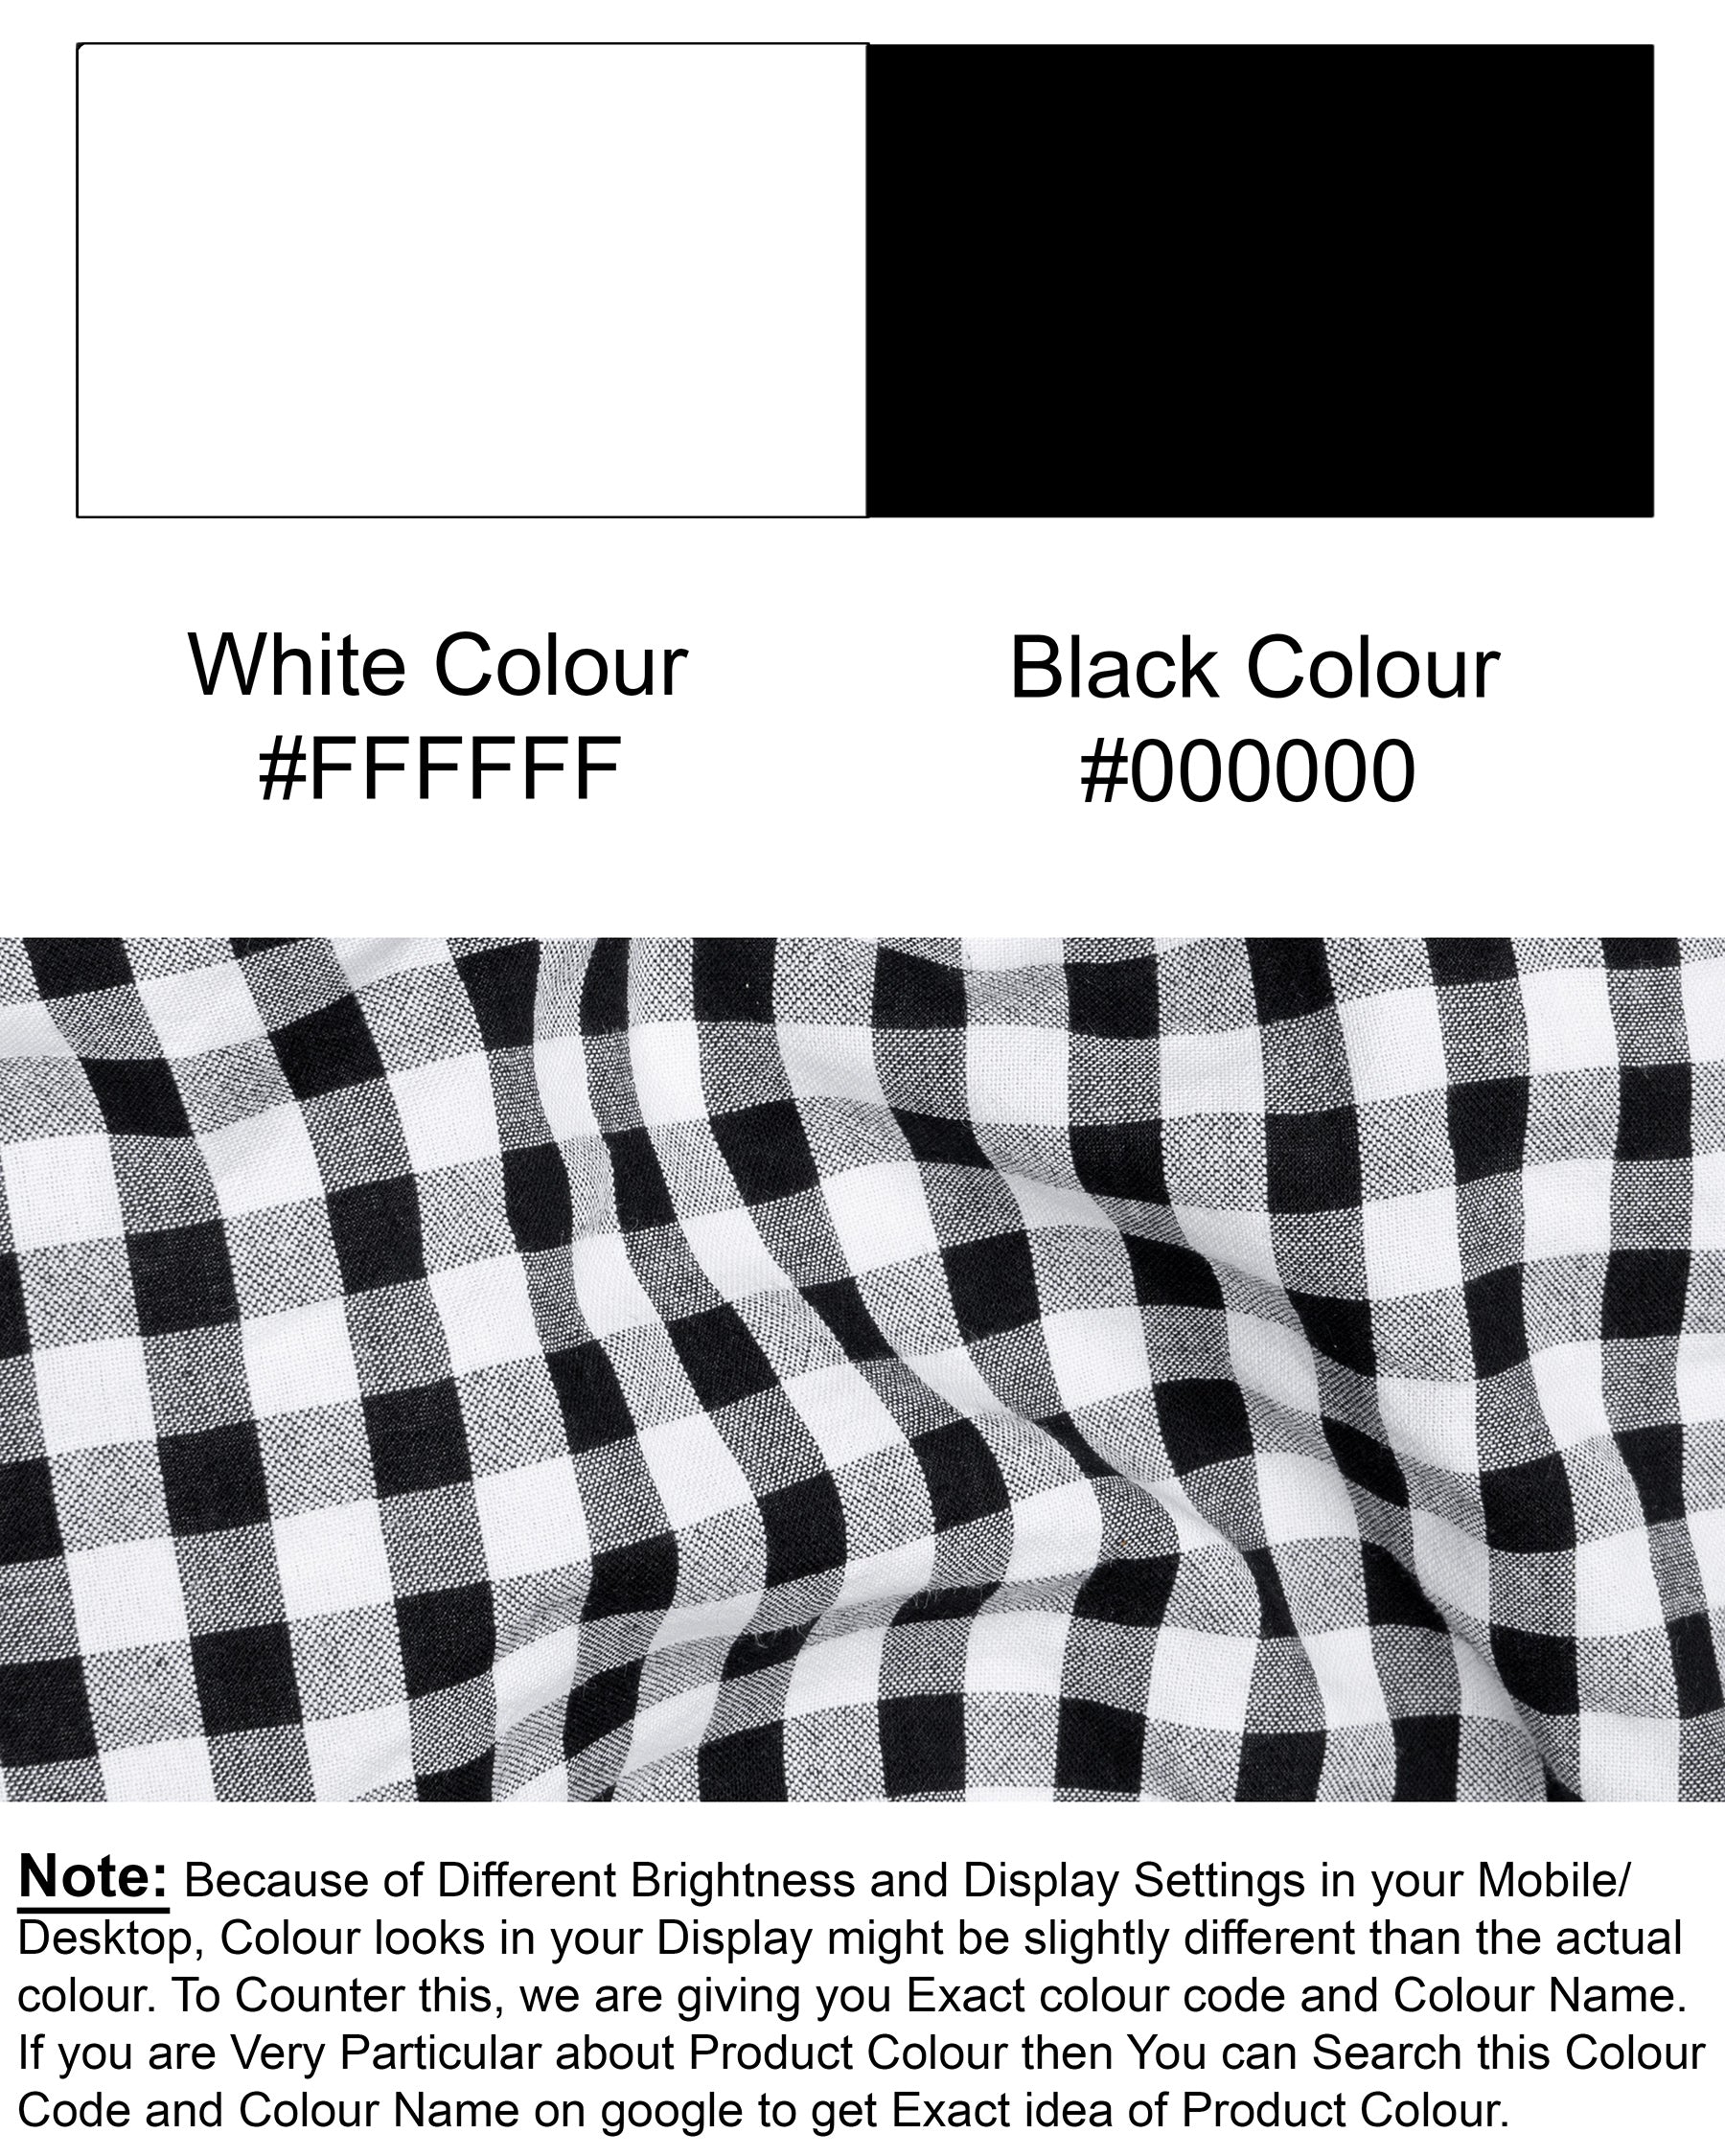 Black and White Seersucker Chequered Premium Cotton Shirt 5555-BD-BLK-38, 5555-BD-BLK-H-38, 5555-BD-BLK-39, 5555-BD-BLK-H-39, 5555-BD-BLK-40, 5555-BD-BLK-H-40, 5555-BD-BLK-42, 5555-BD-BLK-H-42, 5555-BD-BLK-44, 5555-BD-BLK-H-44, 5555-BD-BLK-46, 5555-BD-BLK-H-46, 5555-BD-BLK-48, 5555-BD-BLK-H-48, 5555-BD-BLK-50, 5555-BD-BLK-H-50, 5555-BD-BLK-52, 5555-BD-BLK-H-52